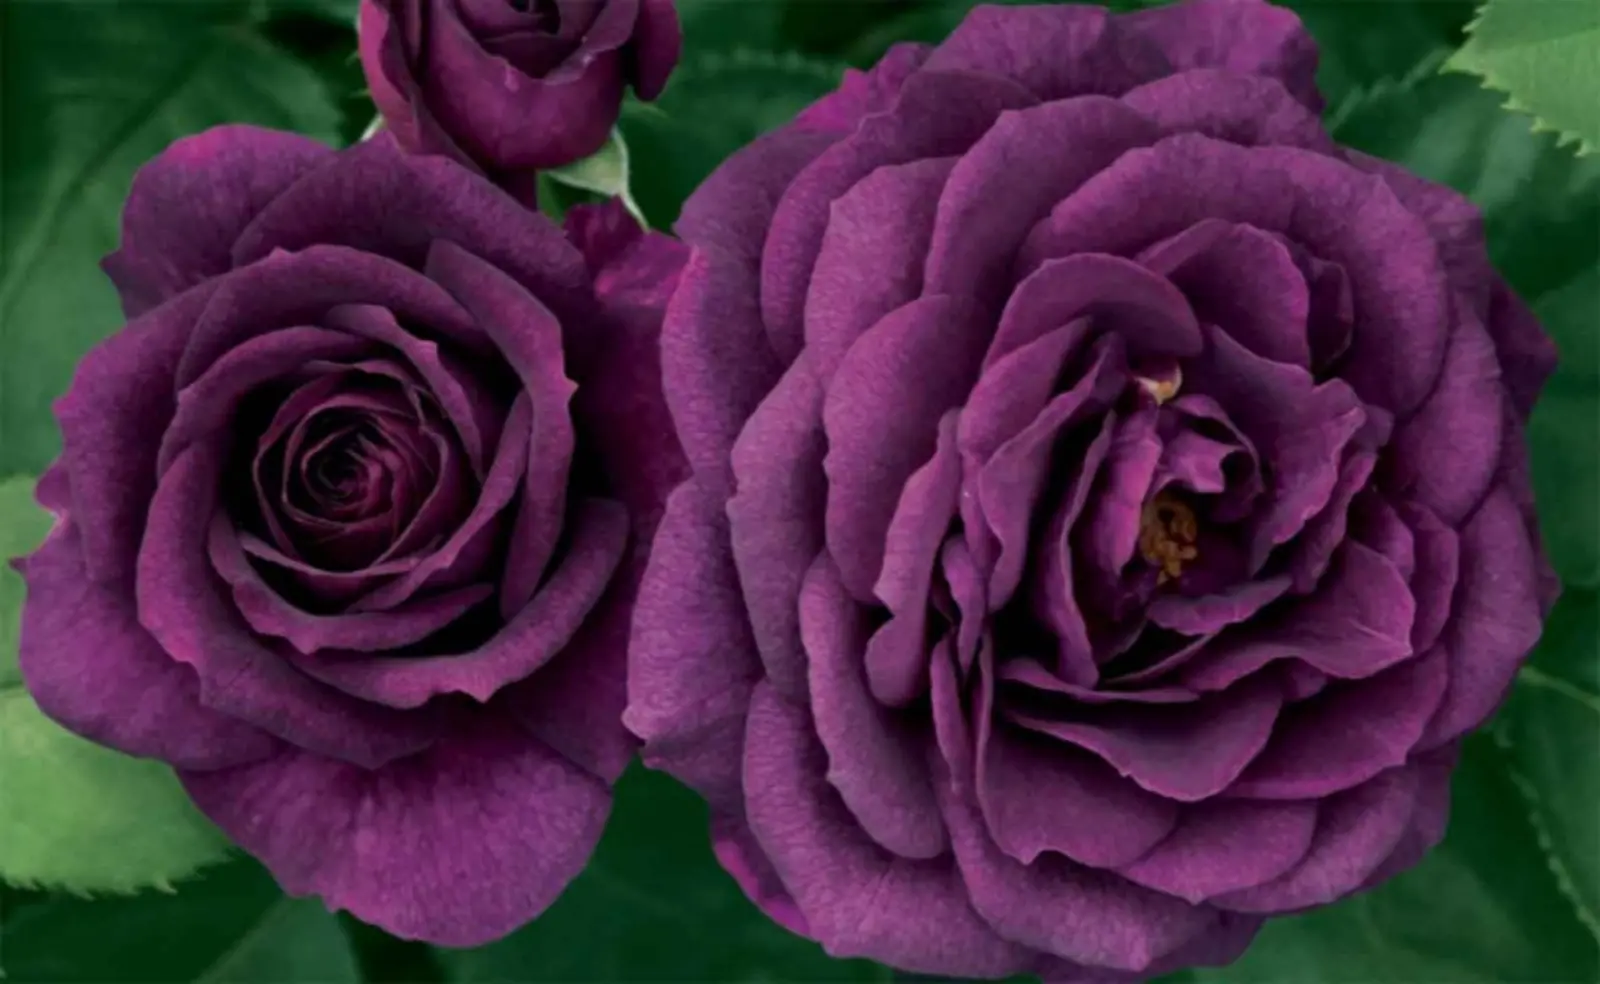 Dark purple Roses.